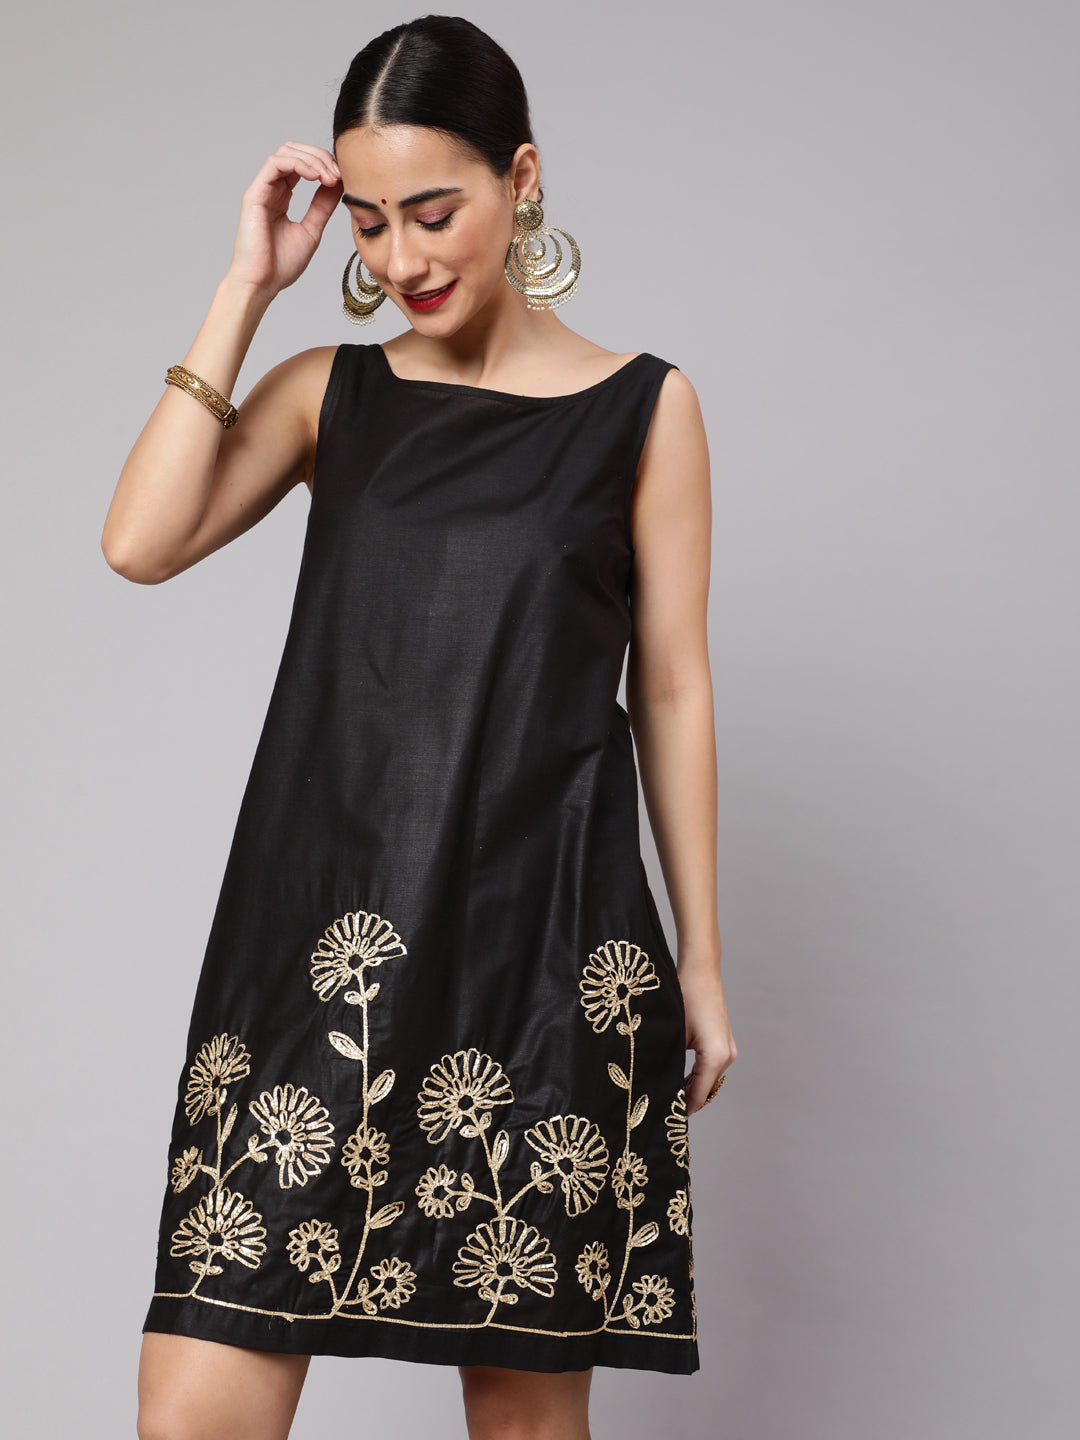 Black Floral Embroidered Shift Dress